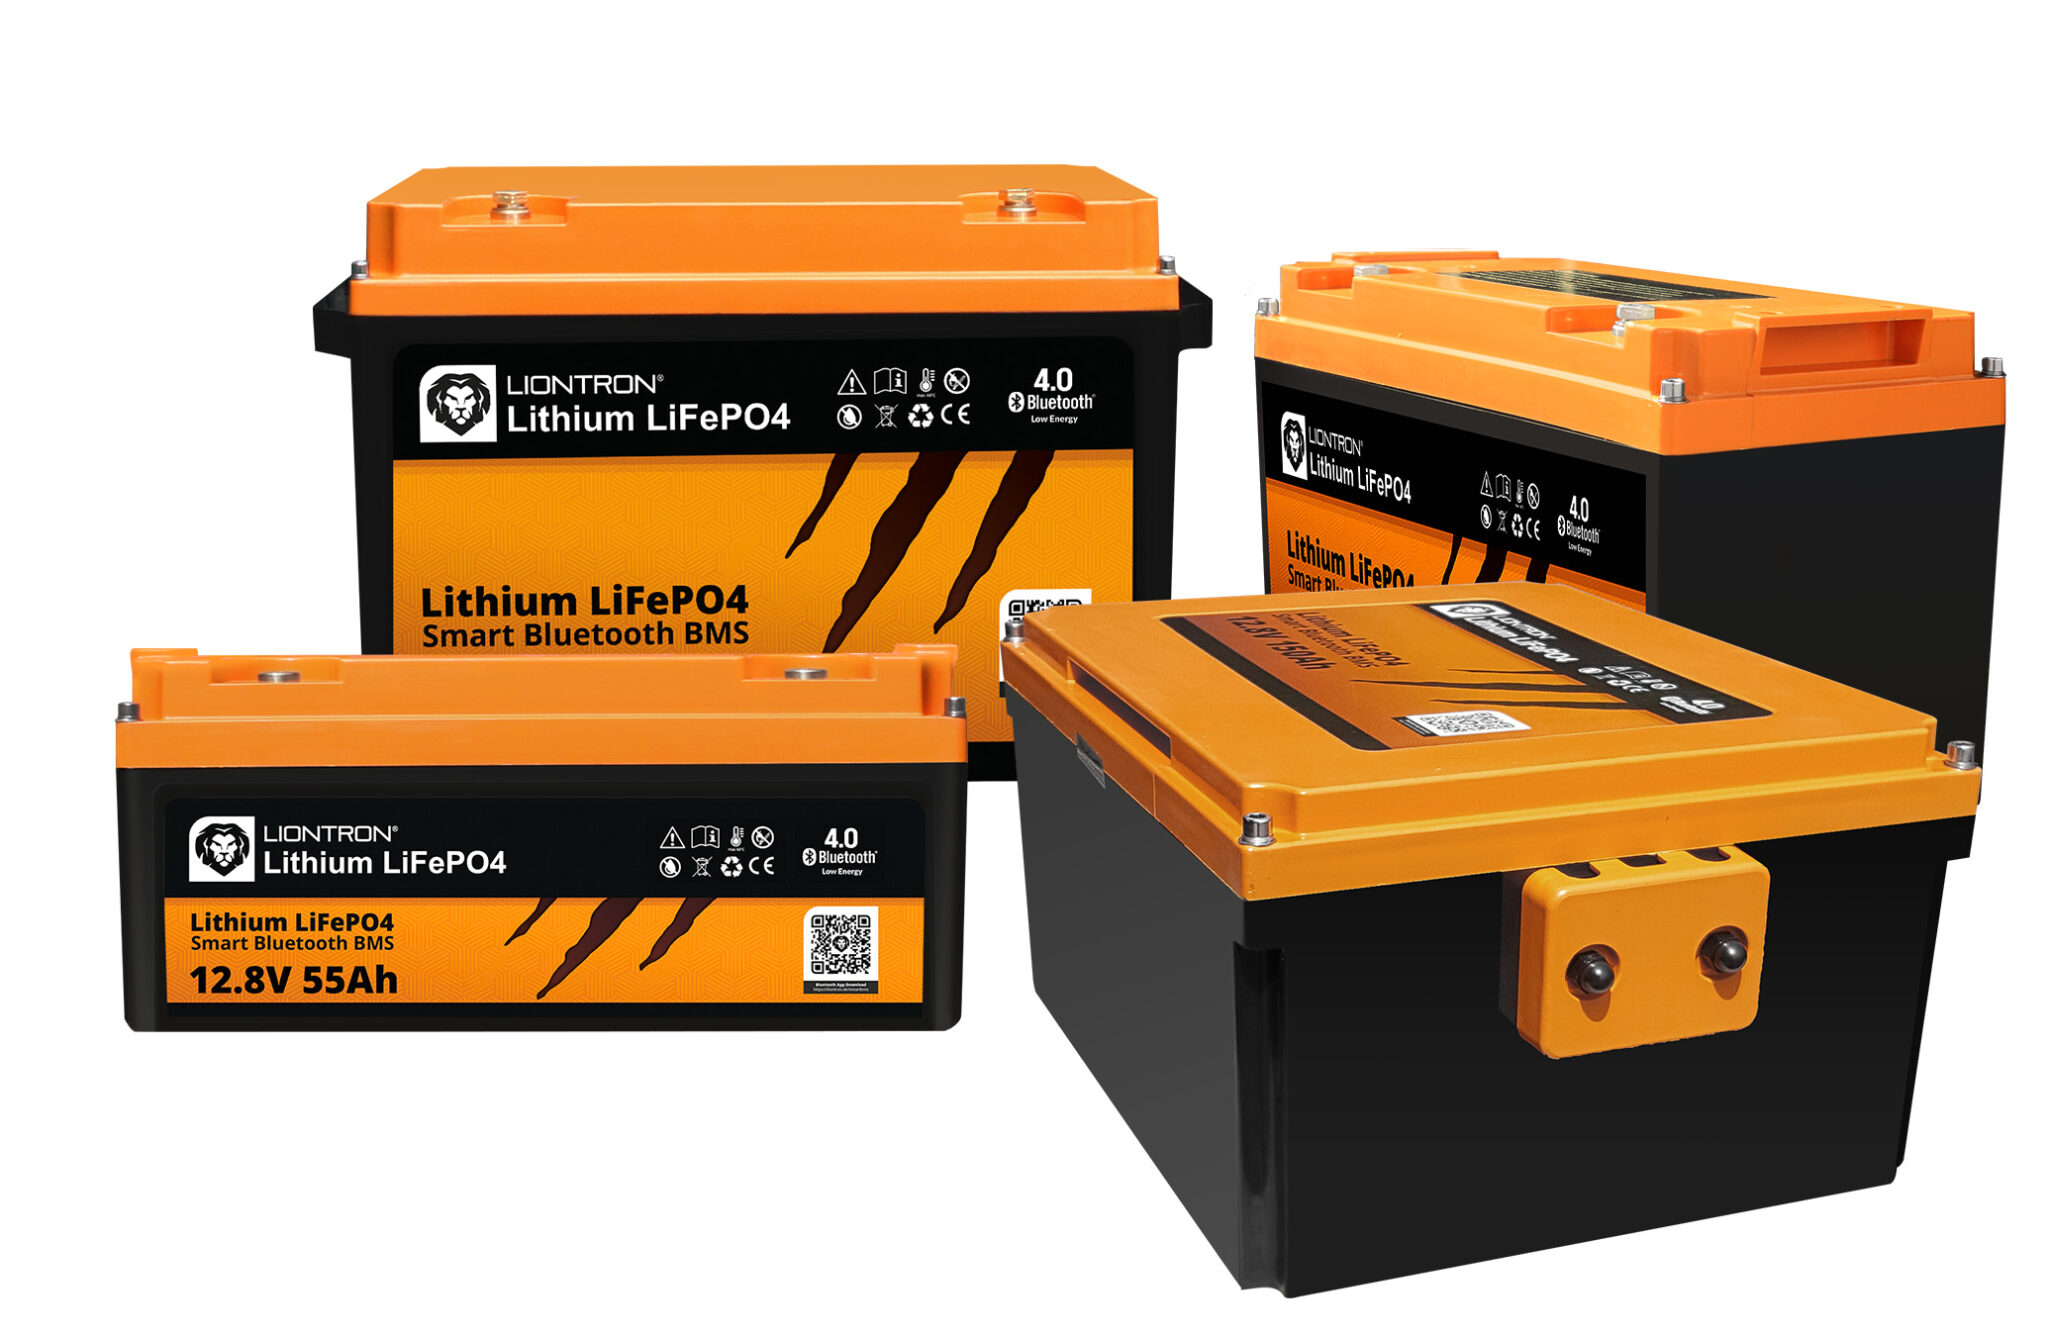 Ausgetauscht! AGM gegen 180Ah Liontron Lithium LiFePo4 Batterie im